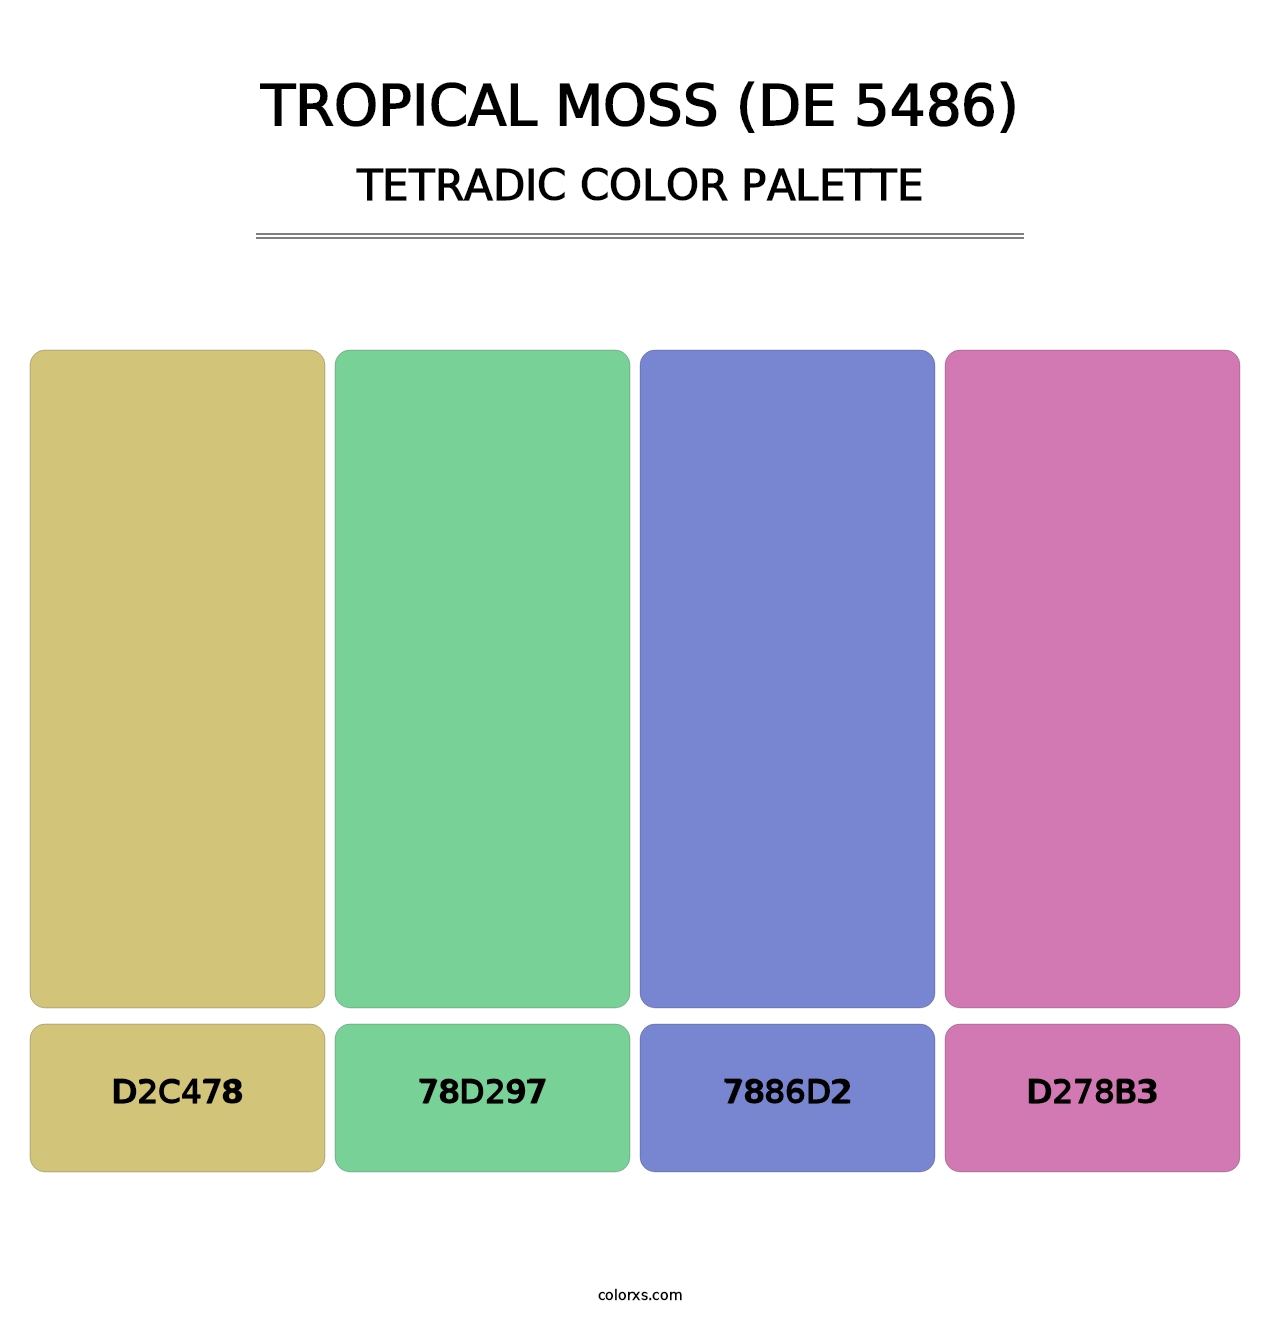 Tropical Moss (DE 5486) - Tetradic Color Palette